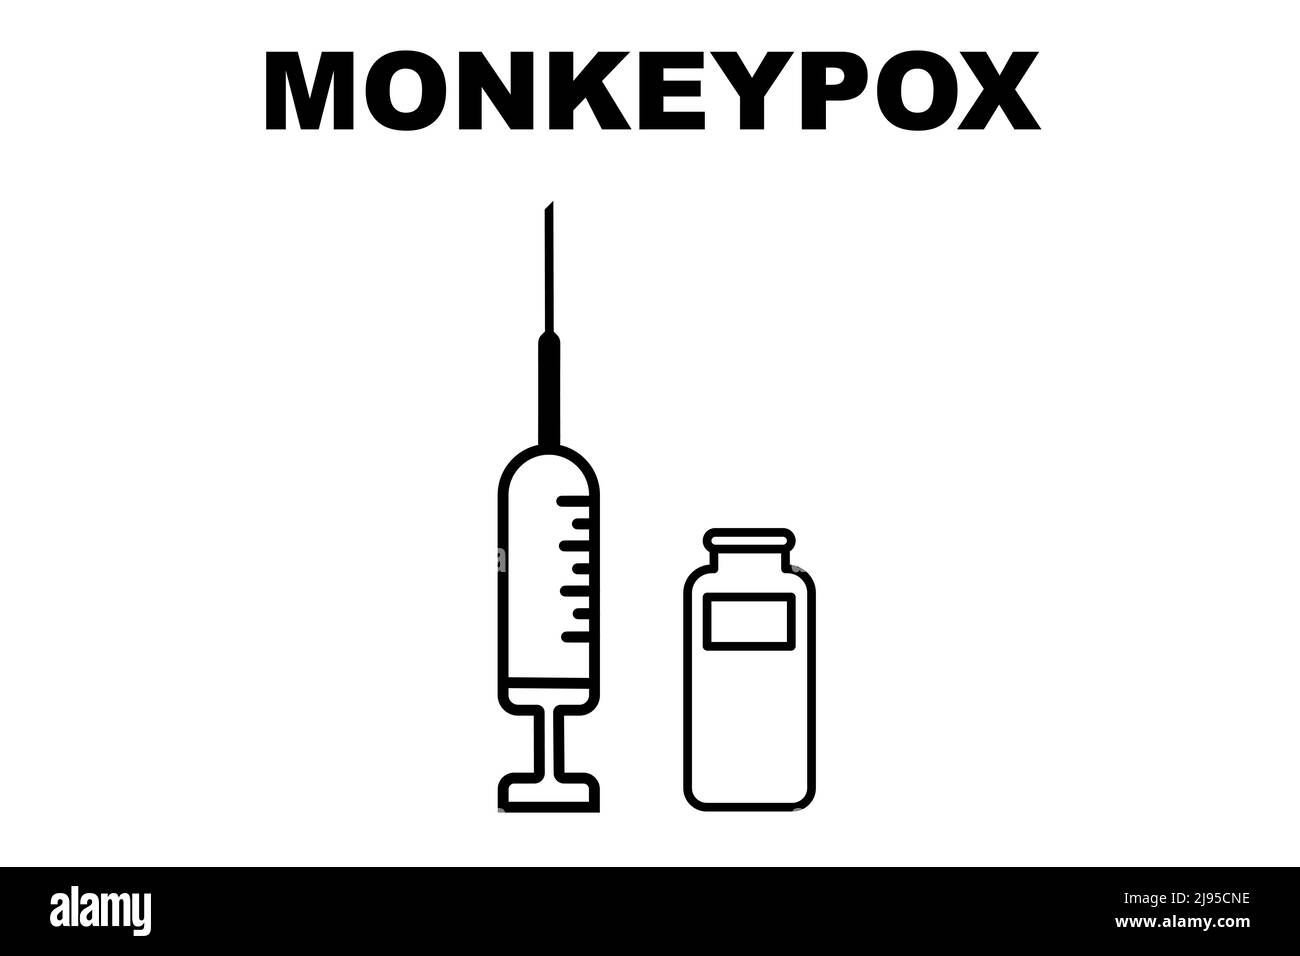 Vaccino. Monkeypox. Vaccino contro il vaiolo. Disegno di un vaccino con l'iniezione, la siringa e il flaconcino. Vaccino per la scimmietta. Disegno illustrativo. Foto Stock